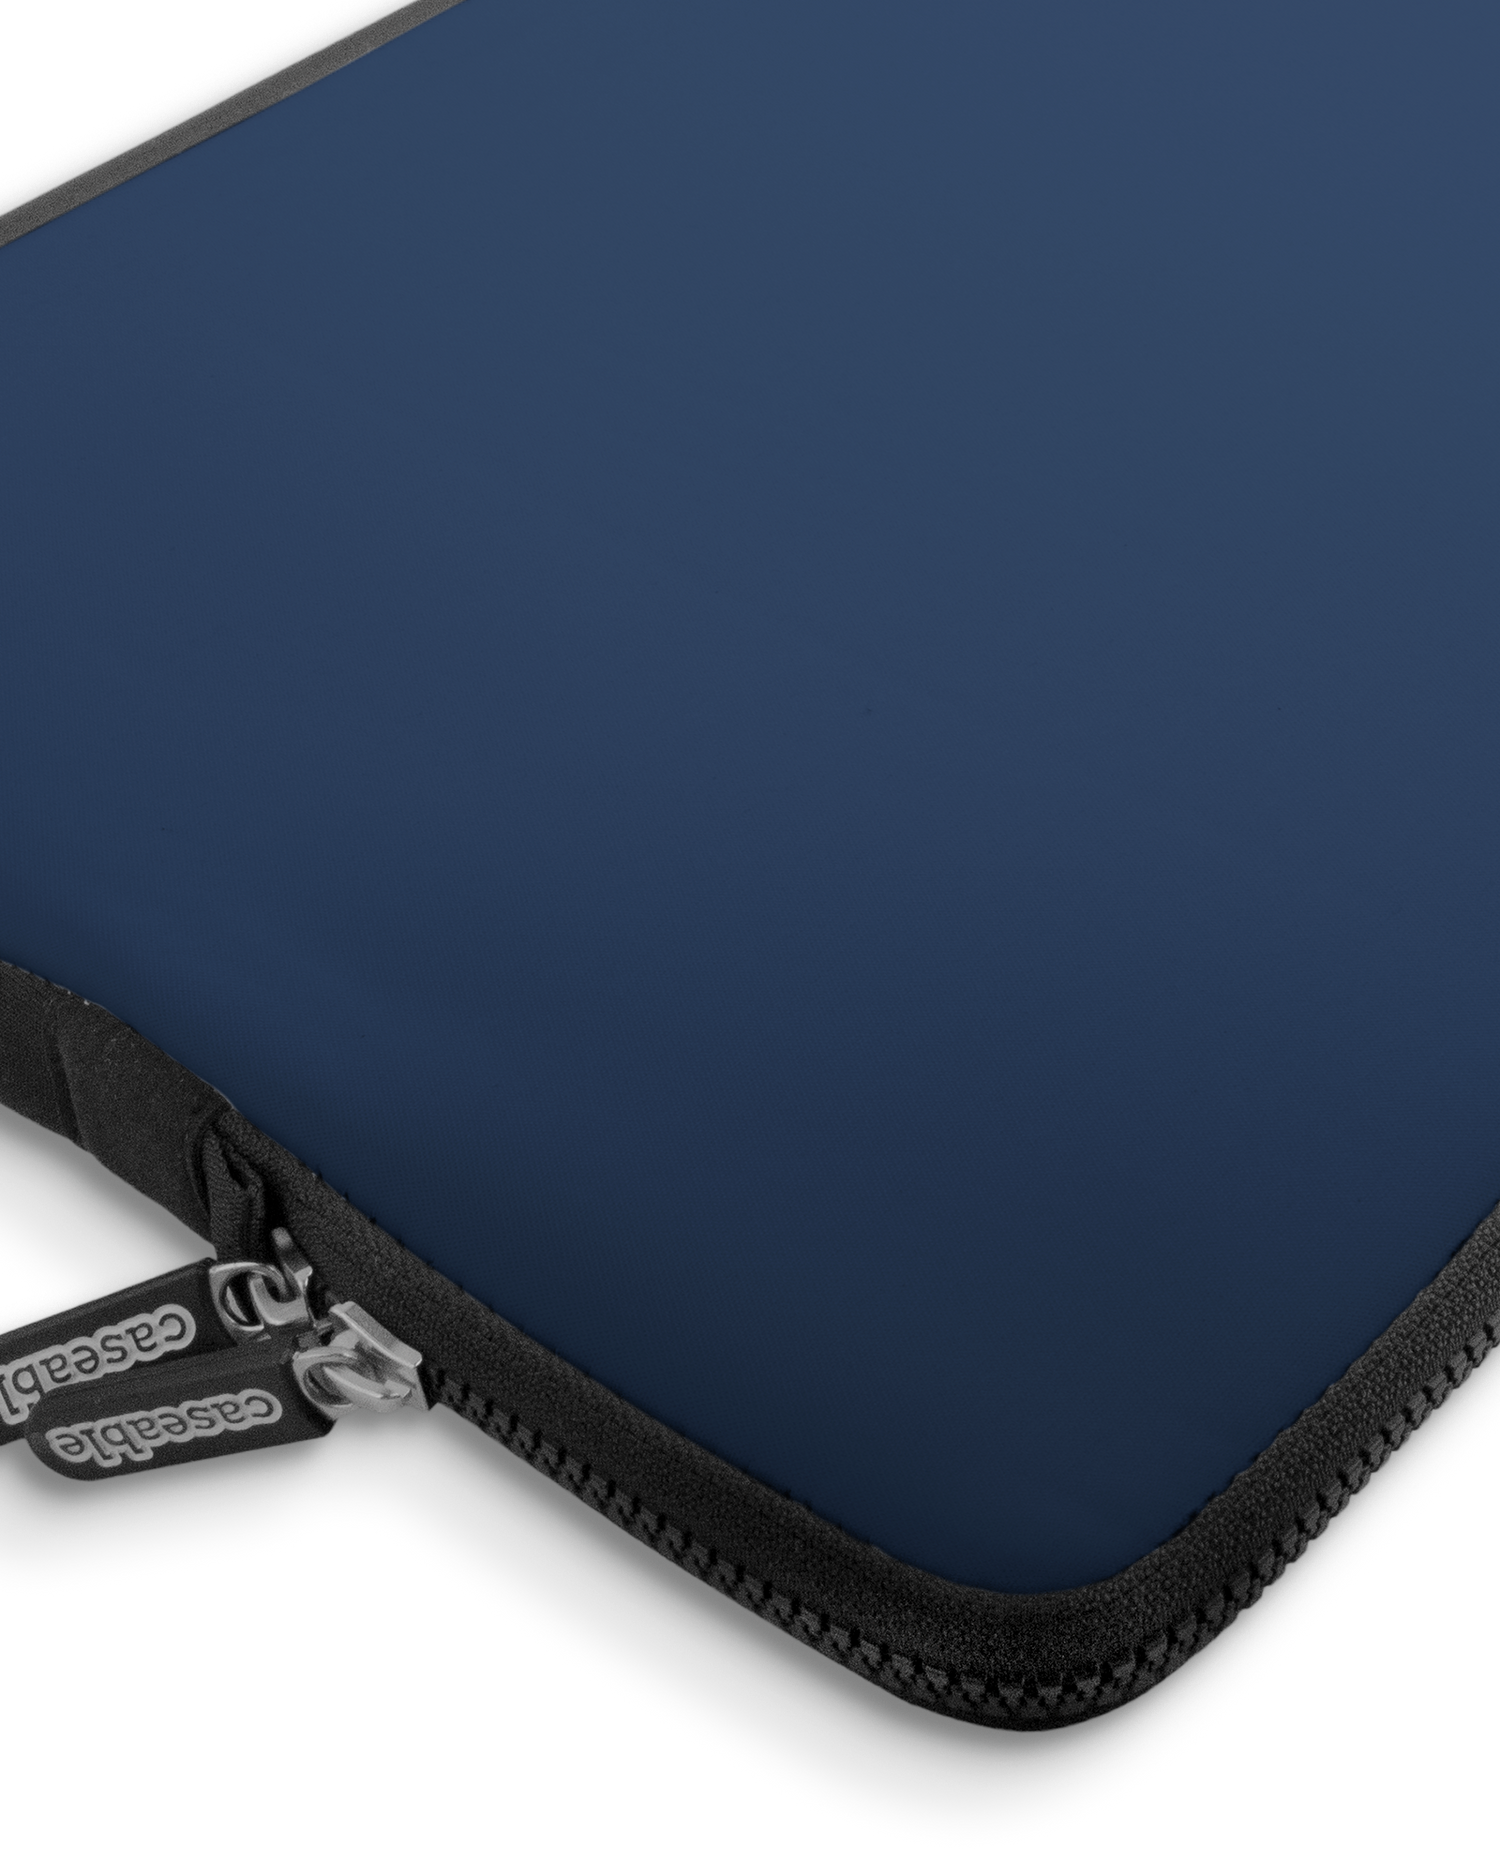 NAVY Premium Laptoptasche 17 Zoll mit Gerät im Inneren